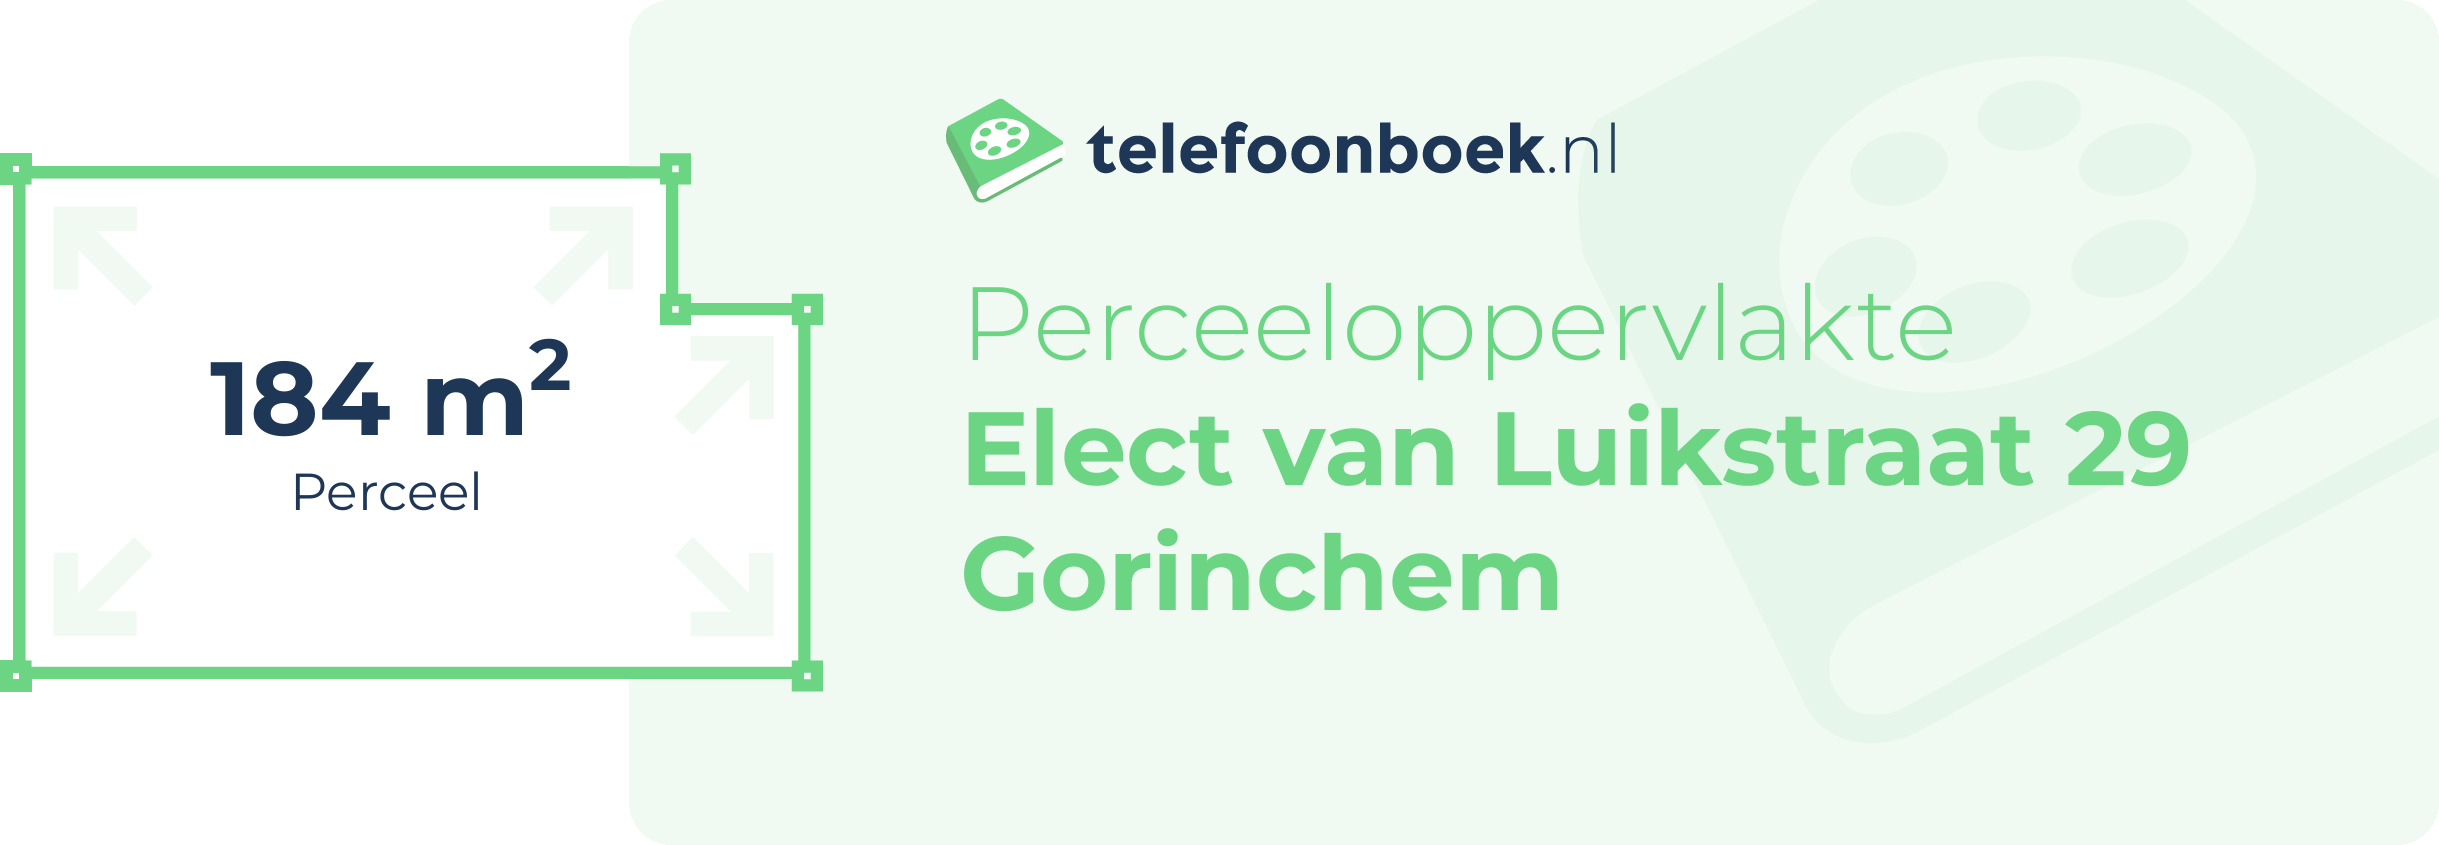 Perceeloppervlakte Elect Van Luikstraat 29 Gorinchem